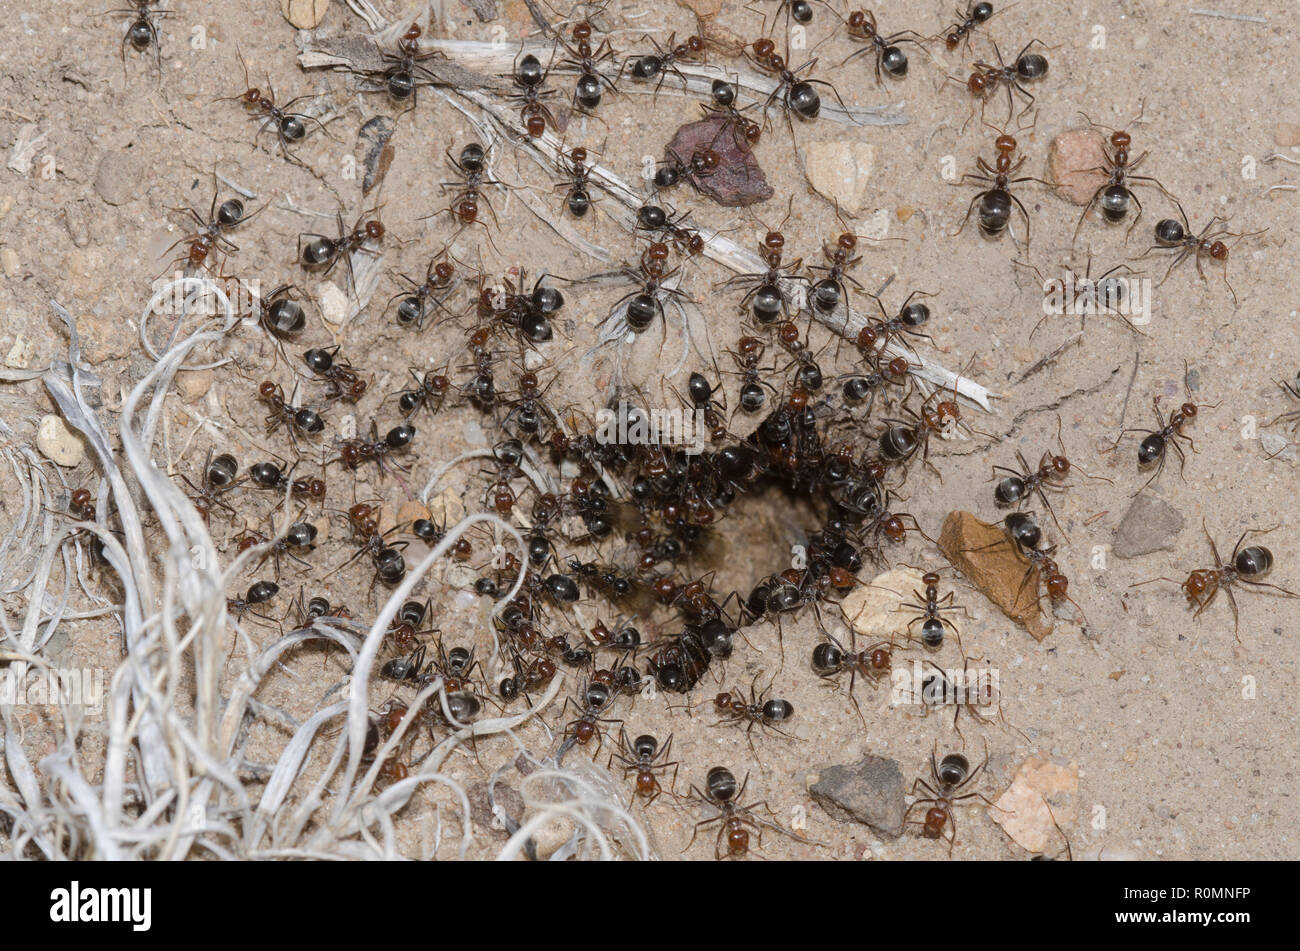 Honeypot Ants, Myrmecocystus mimicus, at nest entrance Stock Photo